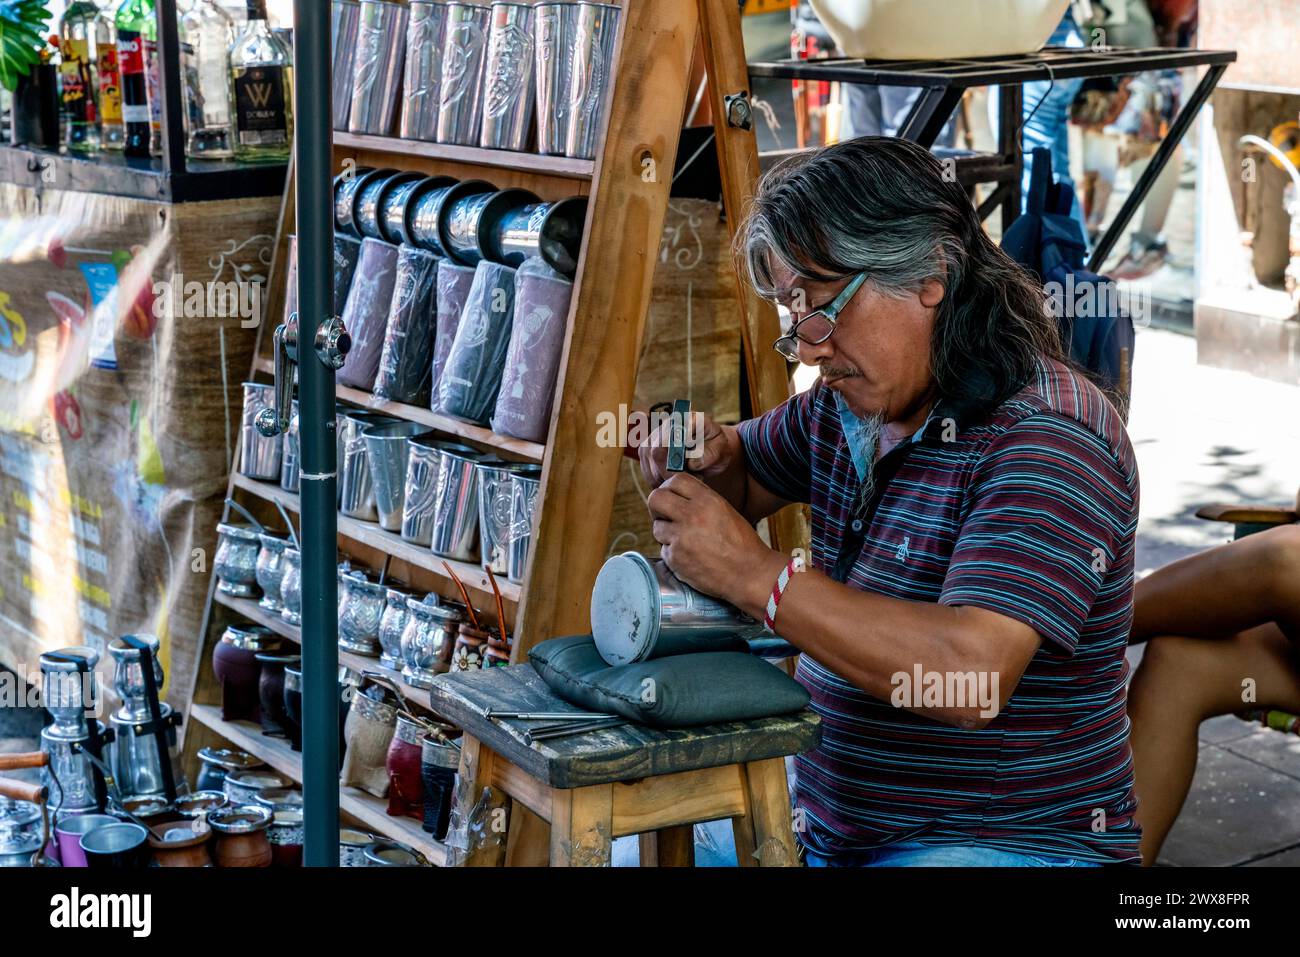 Un uomo incide Una coppa fuori Da Un negozio nel quartiere di la Boca, Buenos Aires, Argentina. Foto Stock